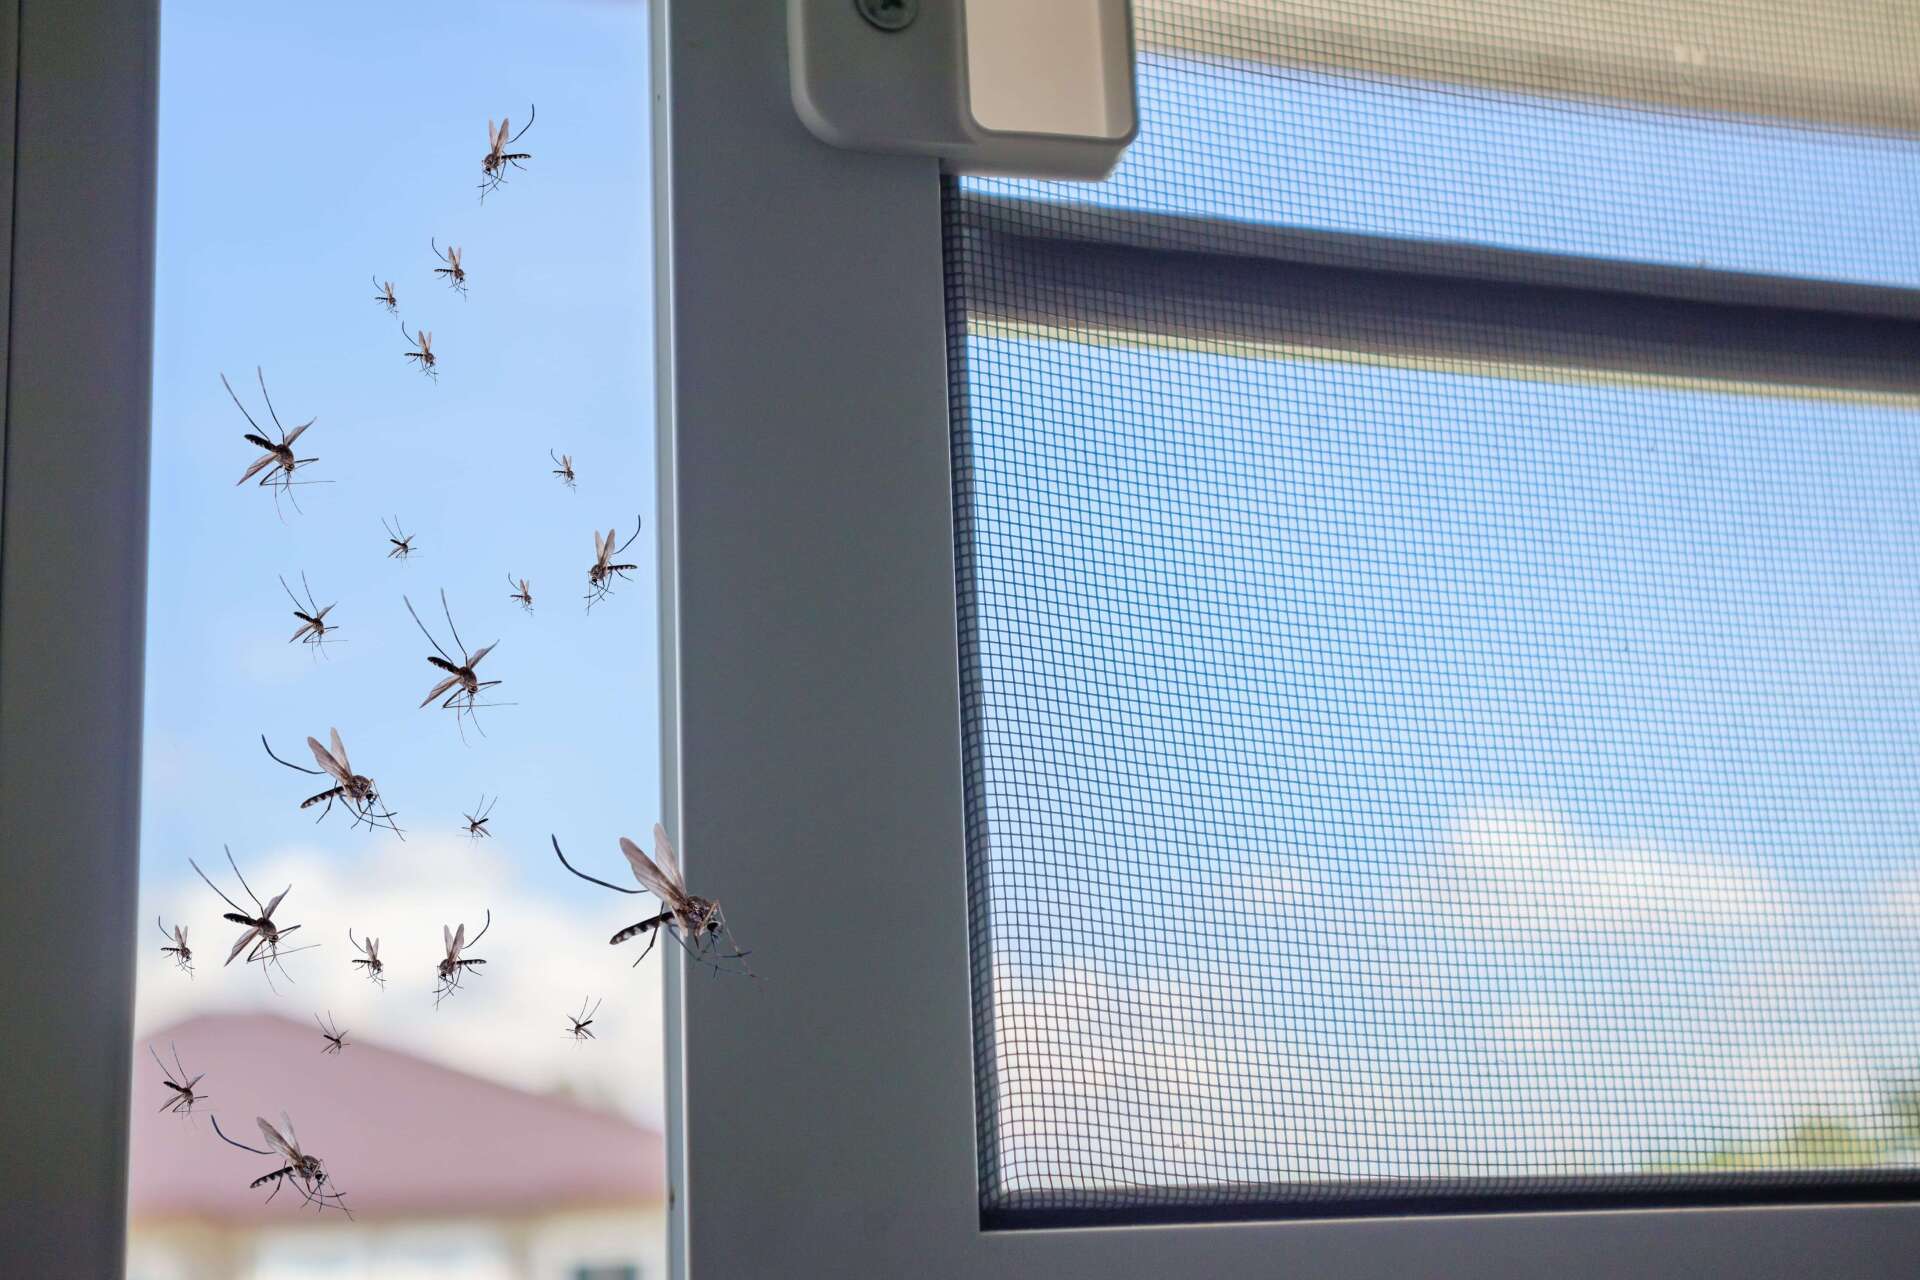 Open door screen letting mosquitos in